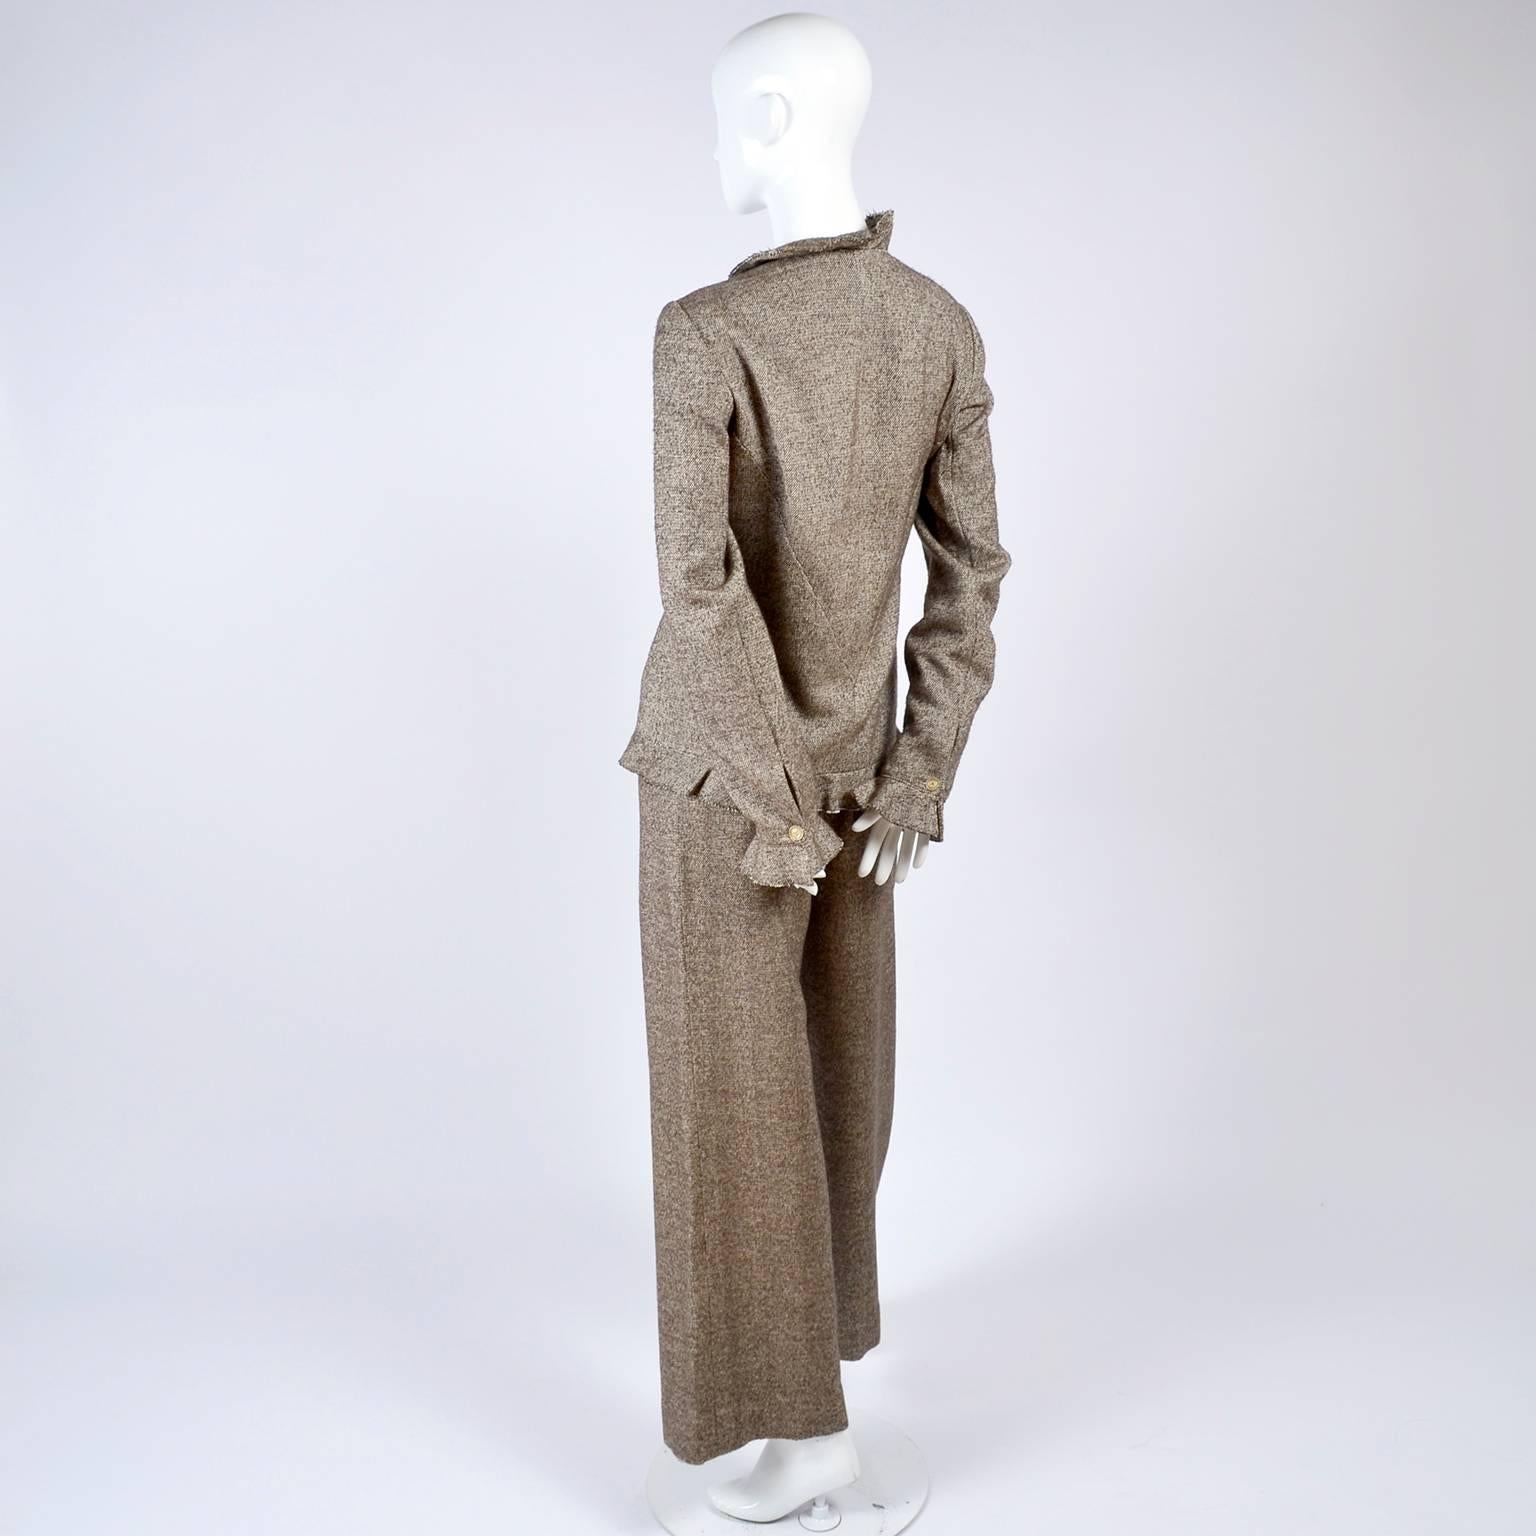 Chanel Jacket & Pants Suit From Autumn 2005 in Silk Alpaca Wool Blend w Ruffles 4